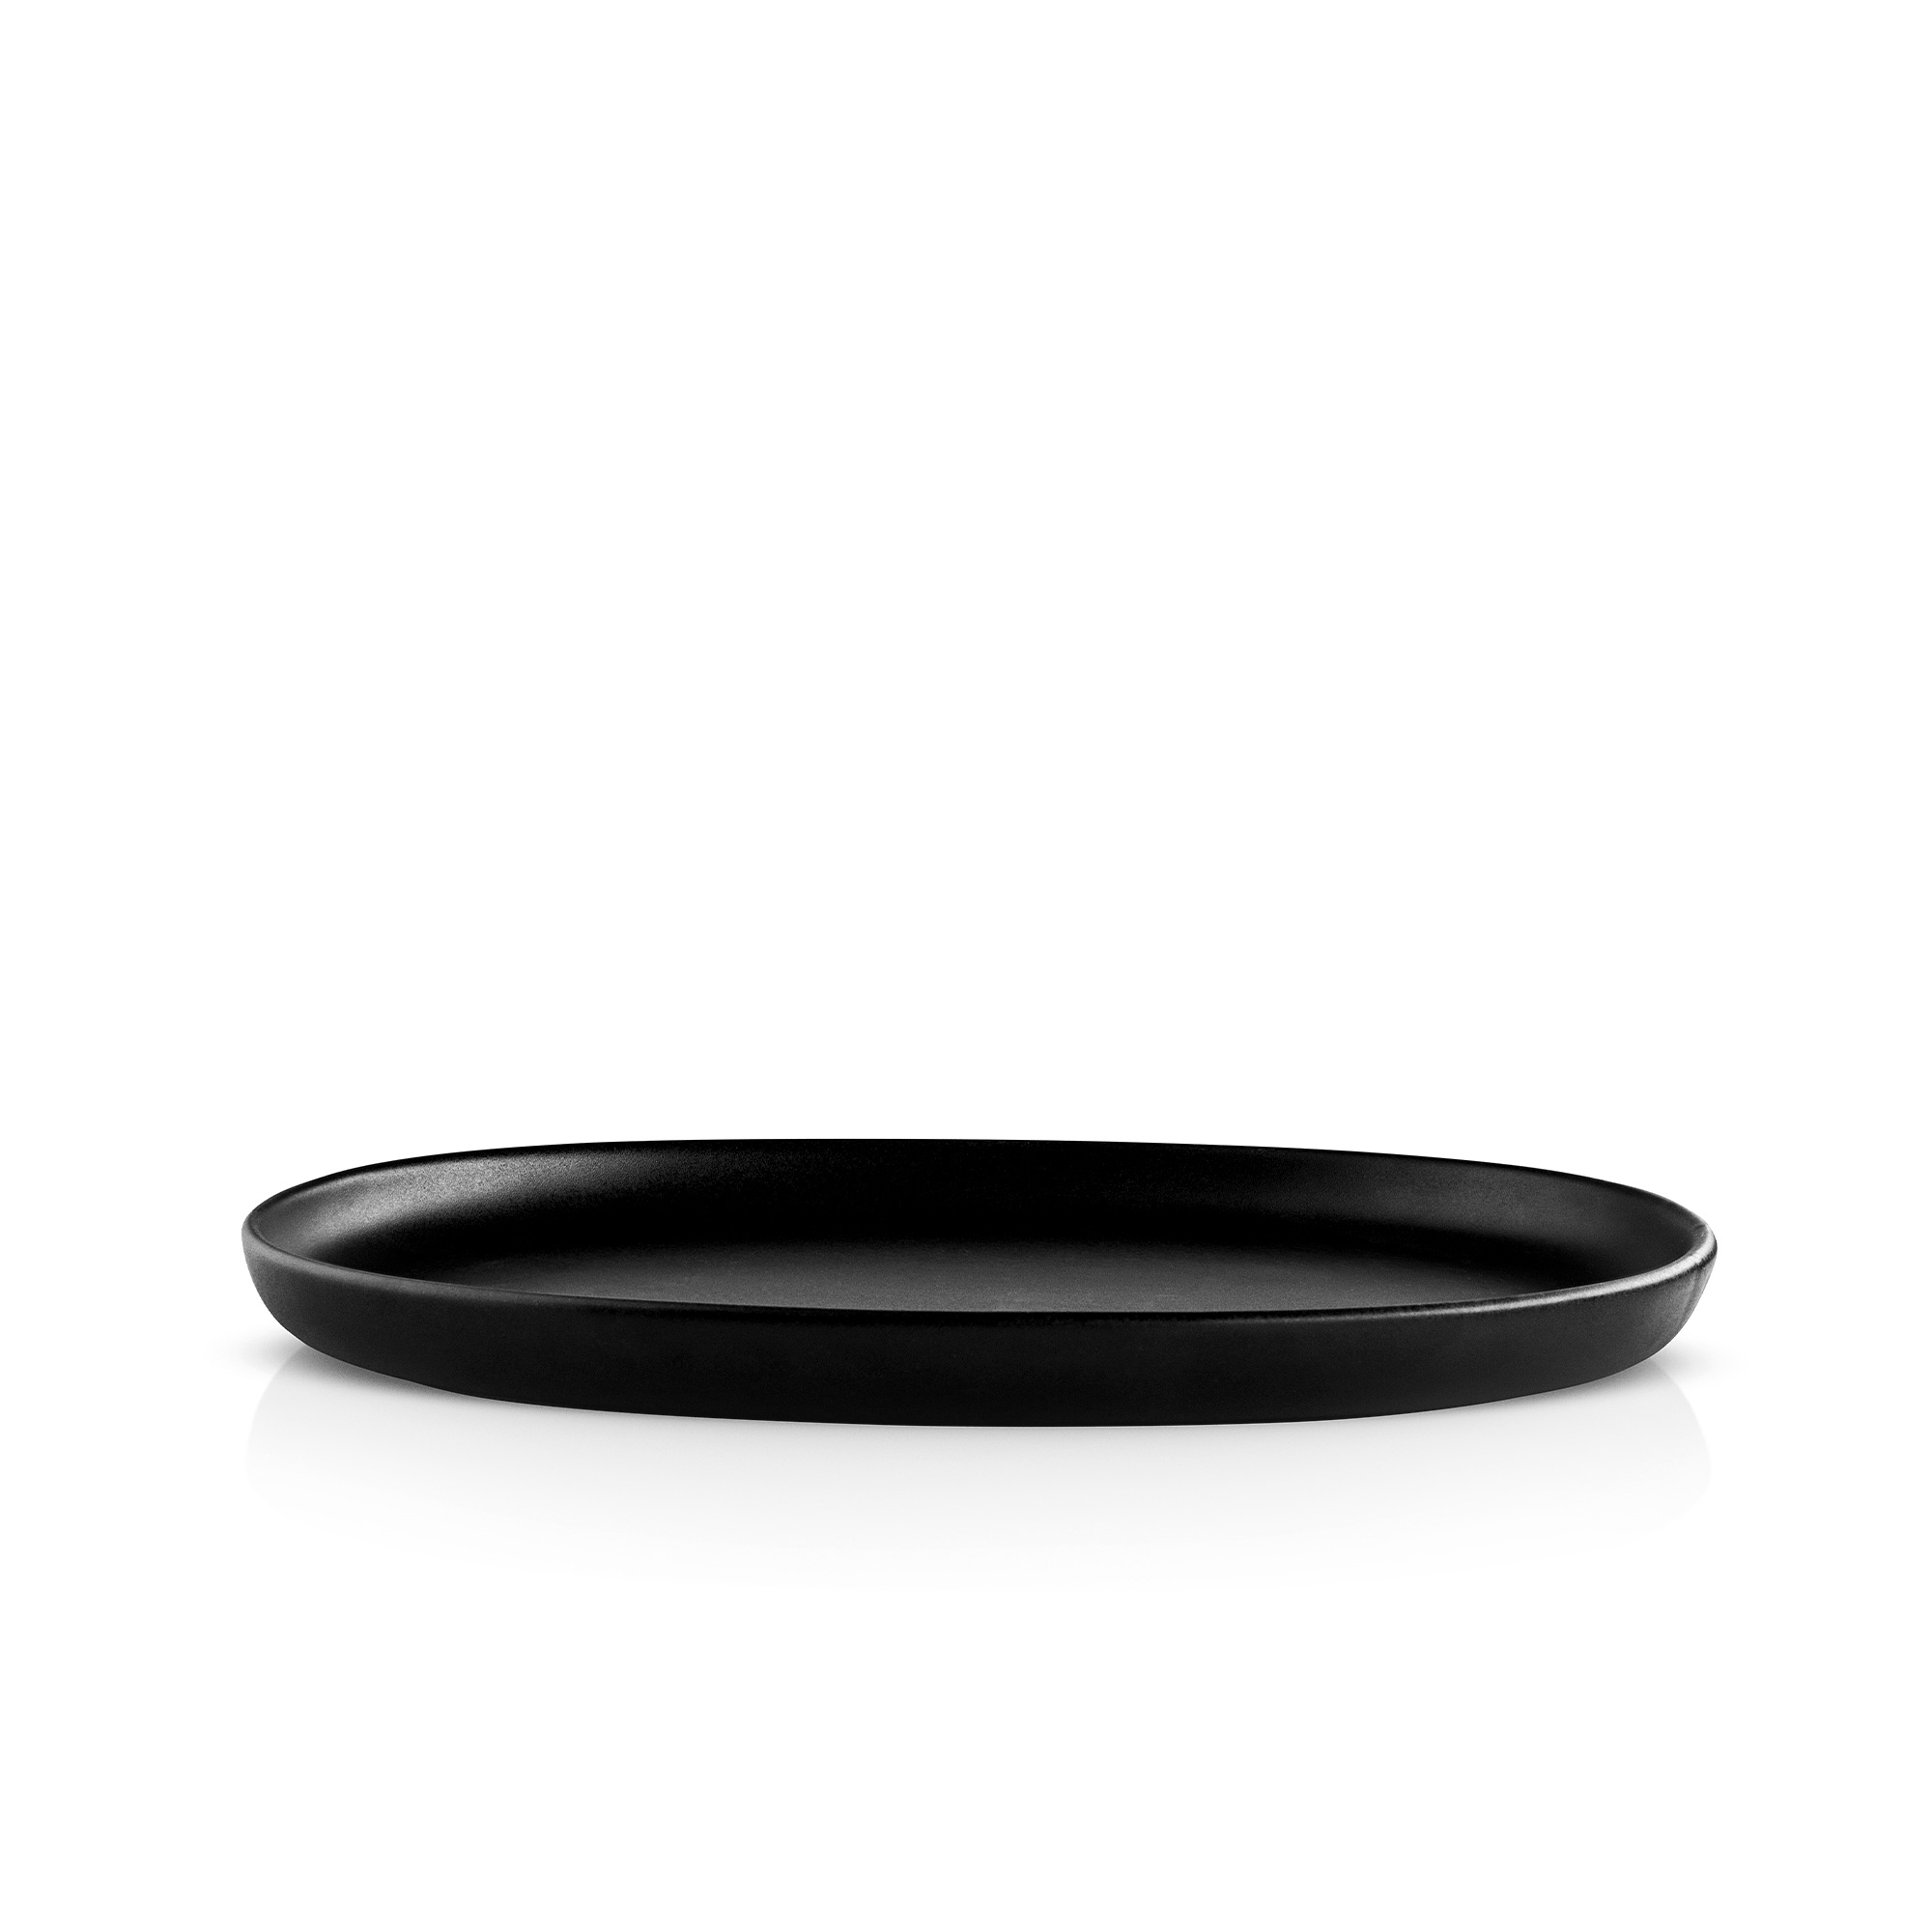 Eva Solo - oval plate - 26 cm